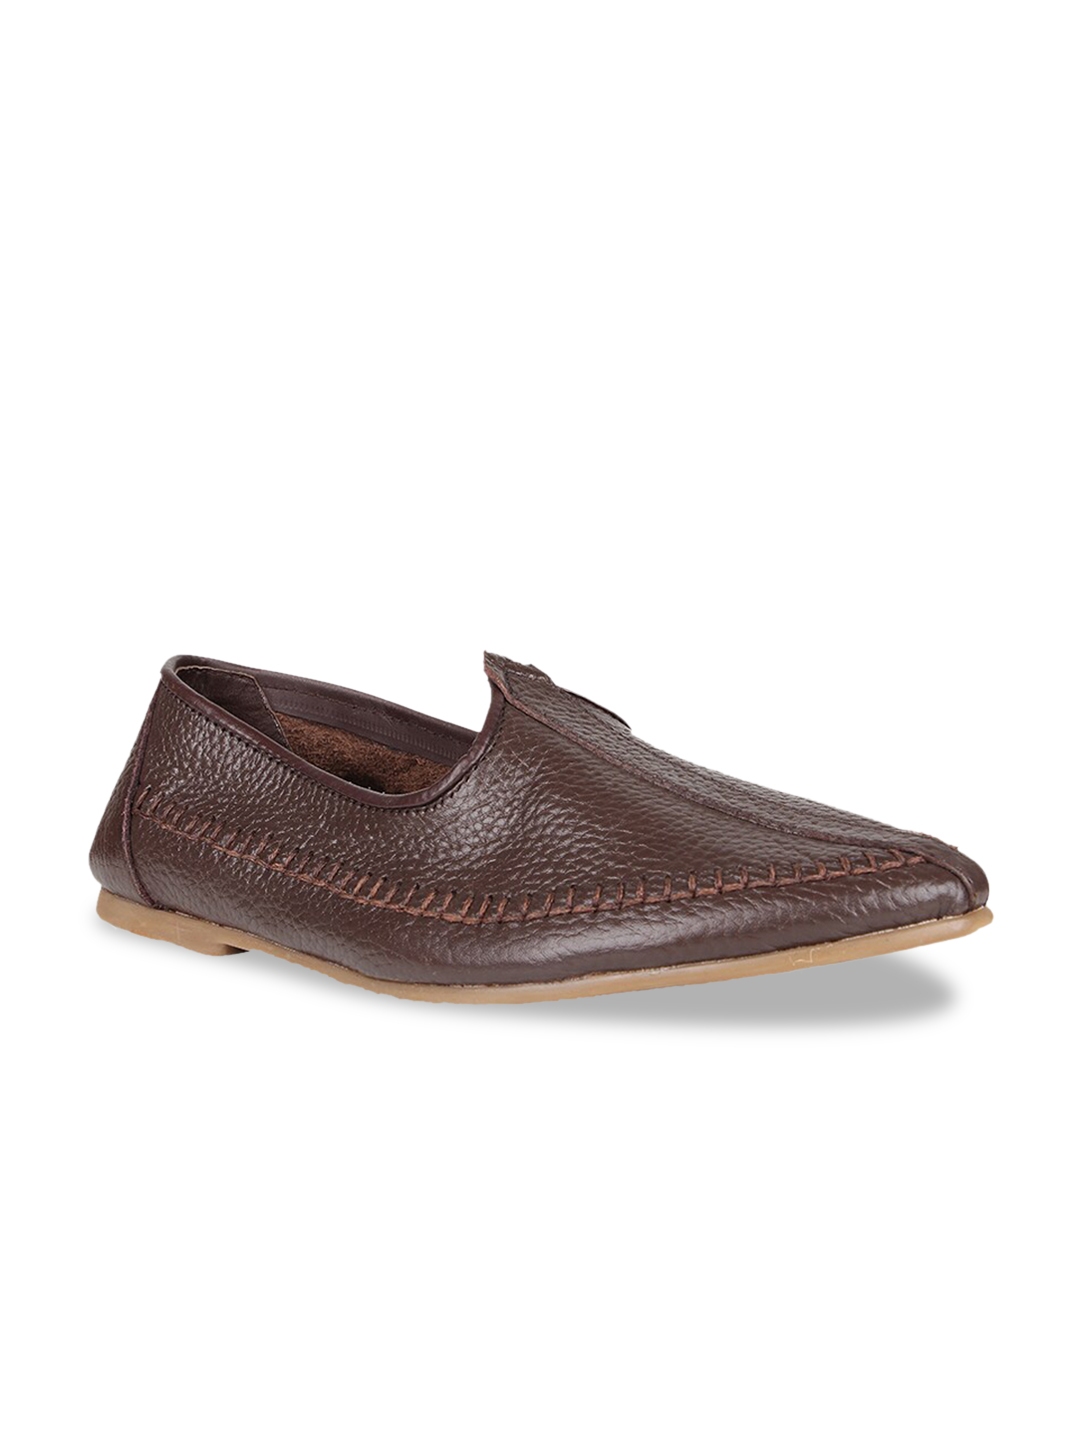 Buy Regal Men Black Solid Leather Formal Loafers - Formal Shoes for Men ...